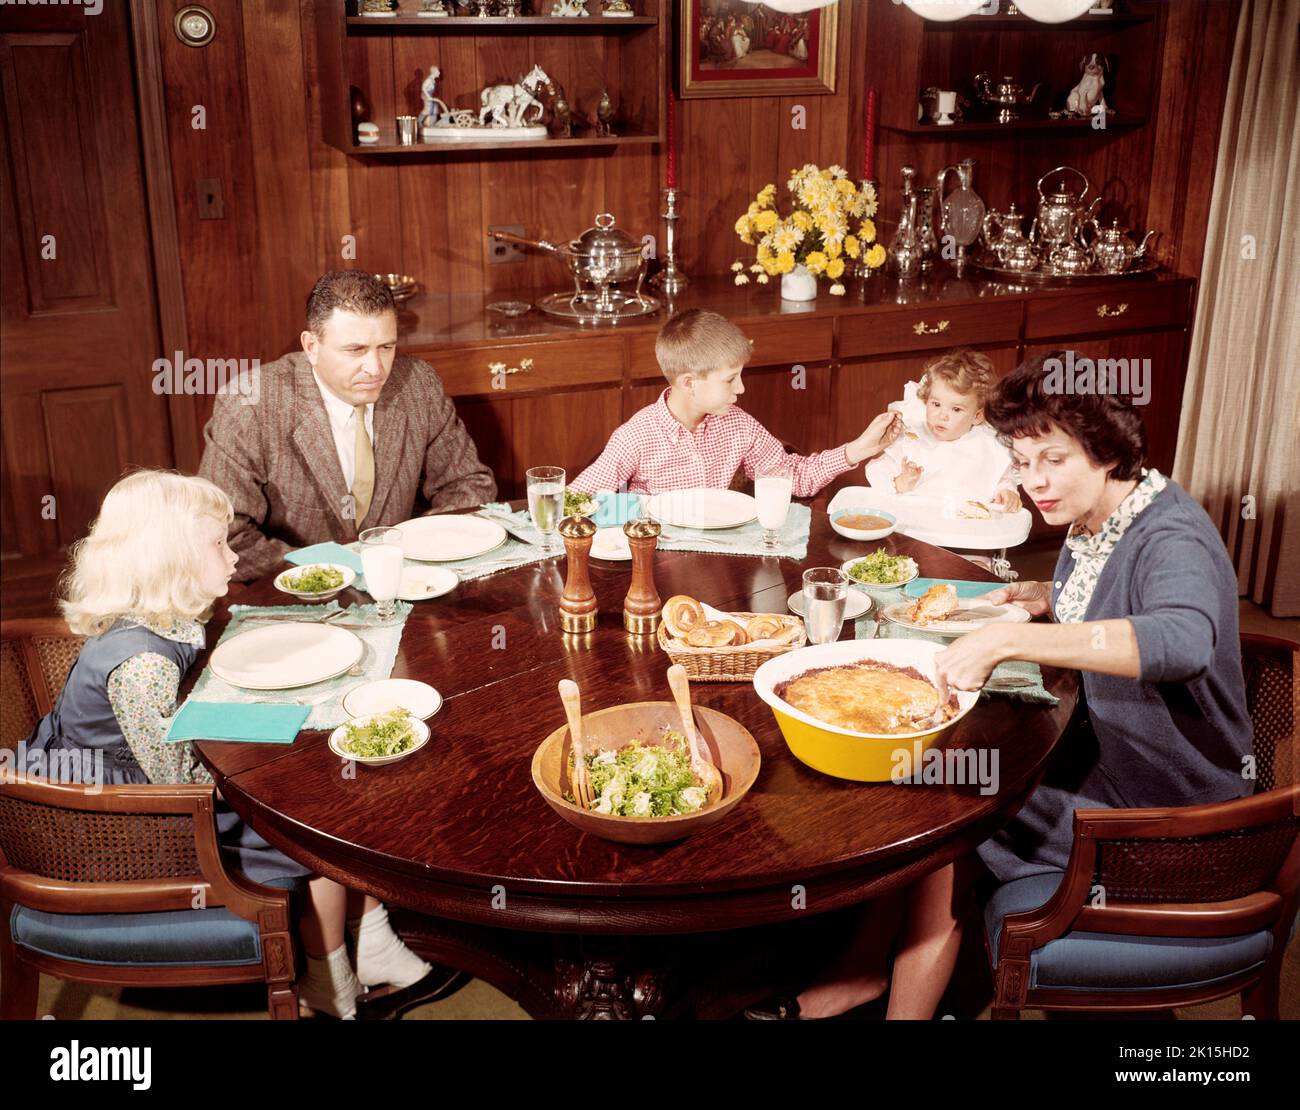 Eine amerikanische Familie, die sich zum Abendessen hinsetzte. Foto aus dem Jahr 1957. Stockfoto